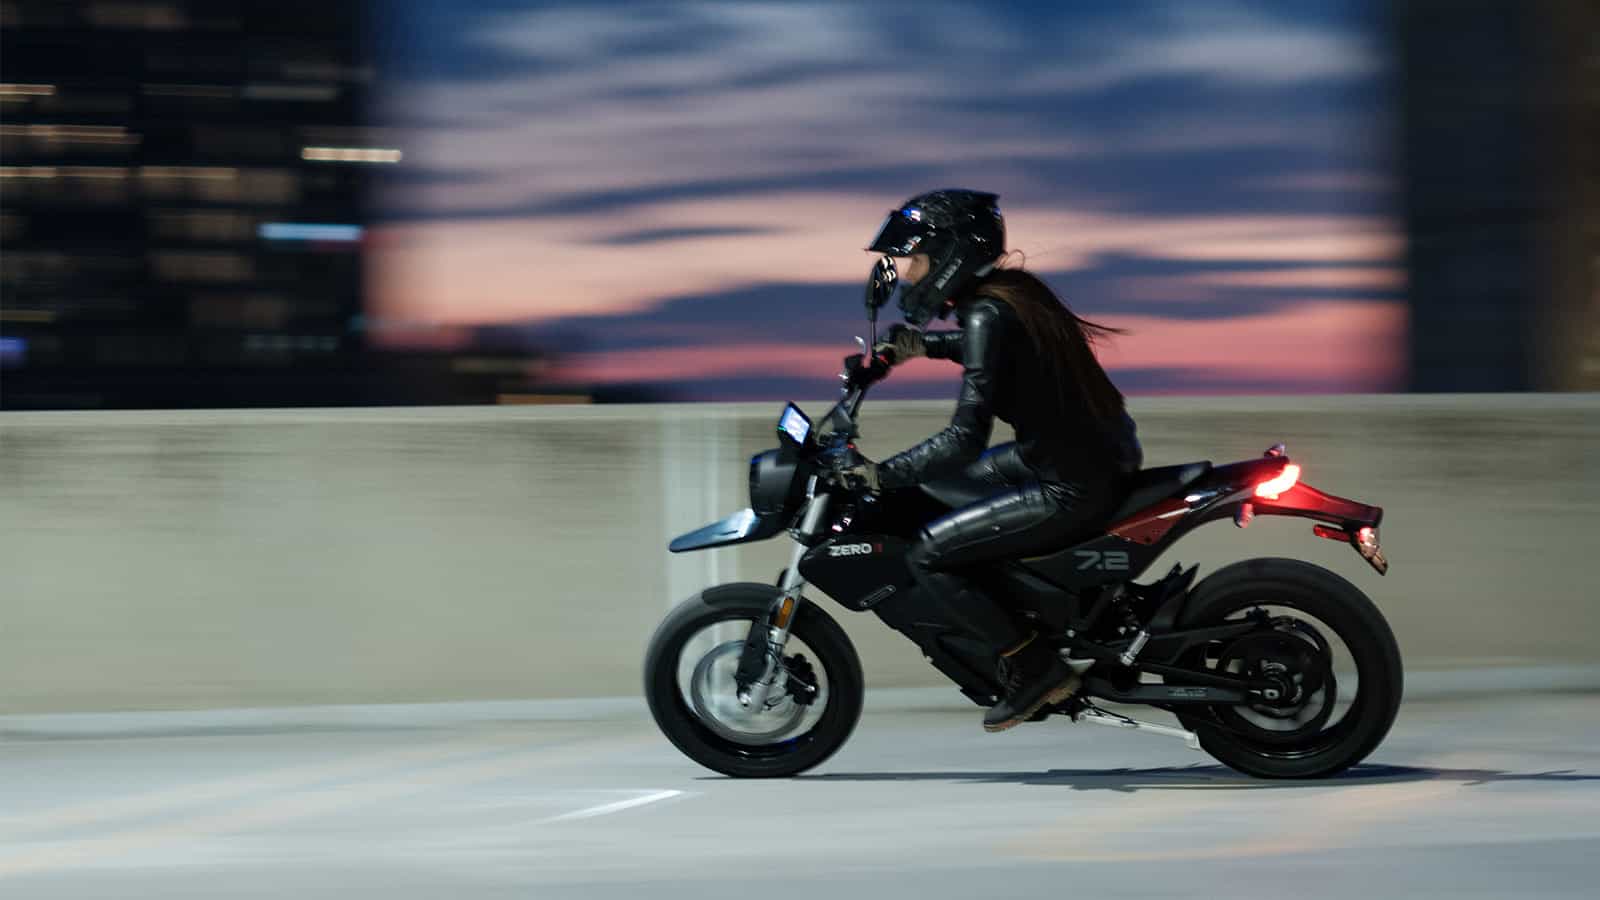 Zero motorcycle with rider speeding